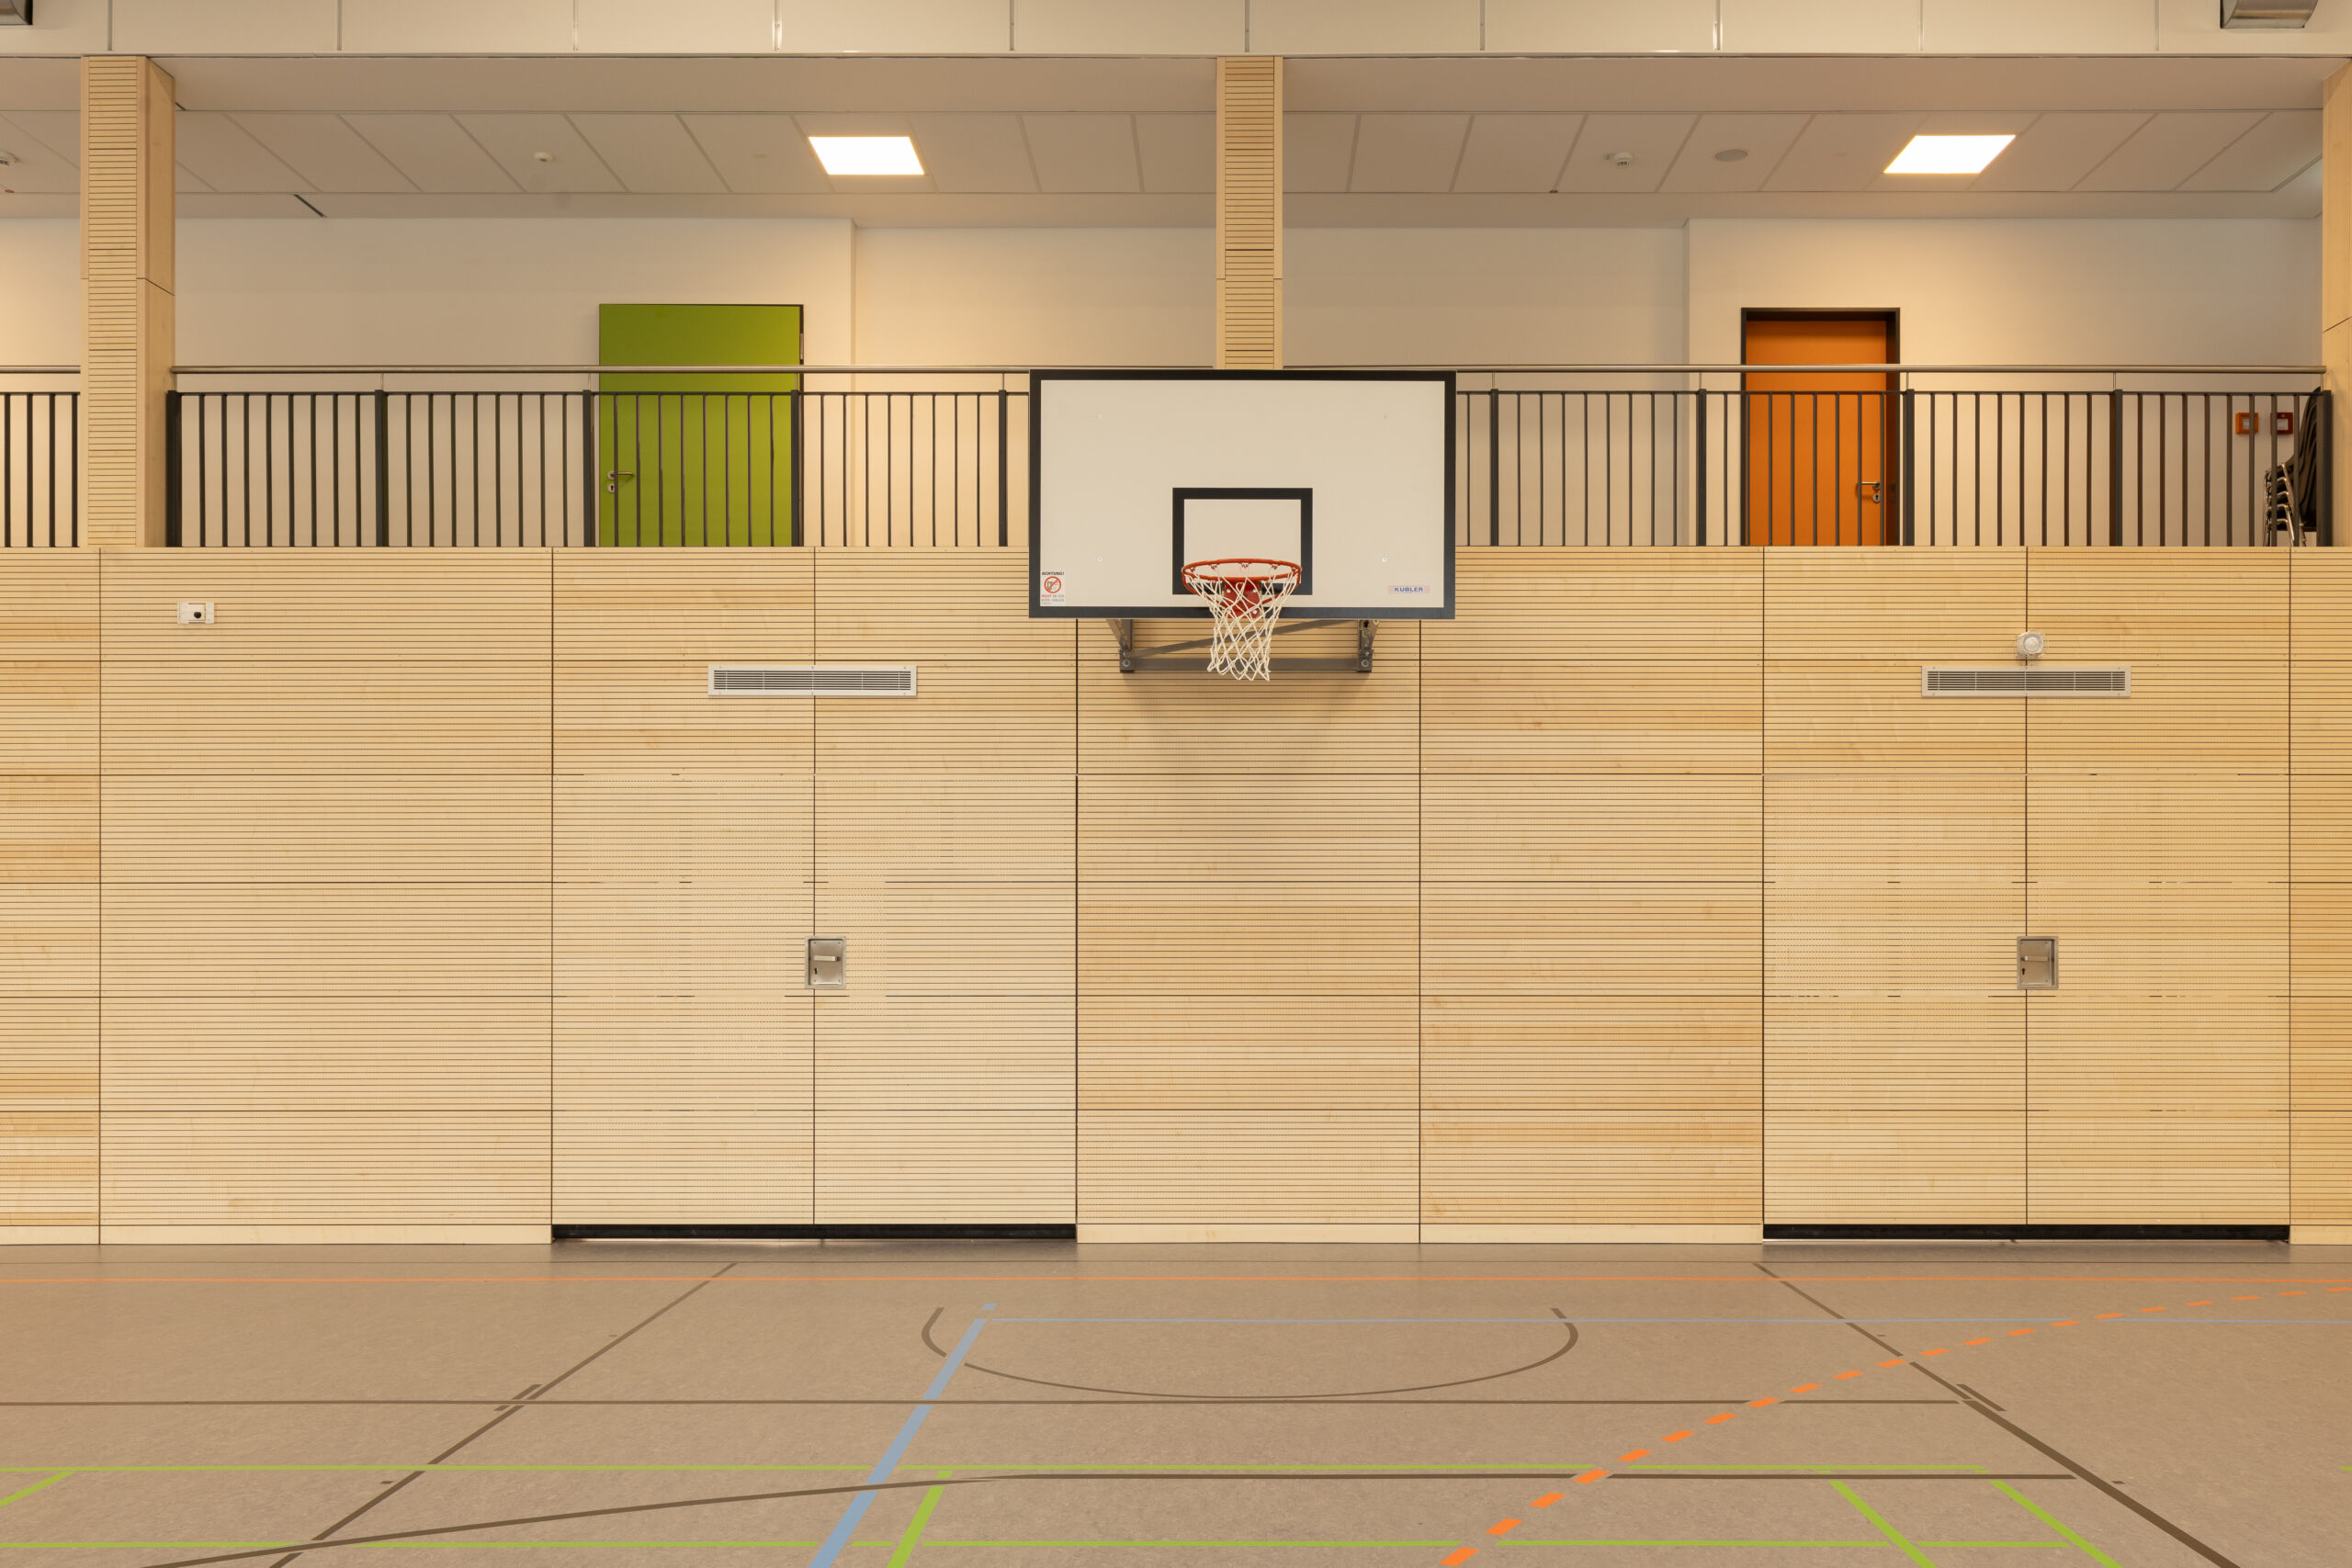 Gymnasium Neubau Sporthalle mit Basketballkorb und Holzverkleidung, geplant und umgesetzt durch das Architekturbüro Die Planschmiede